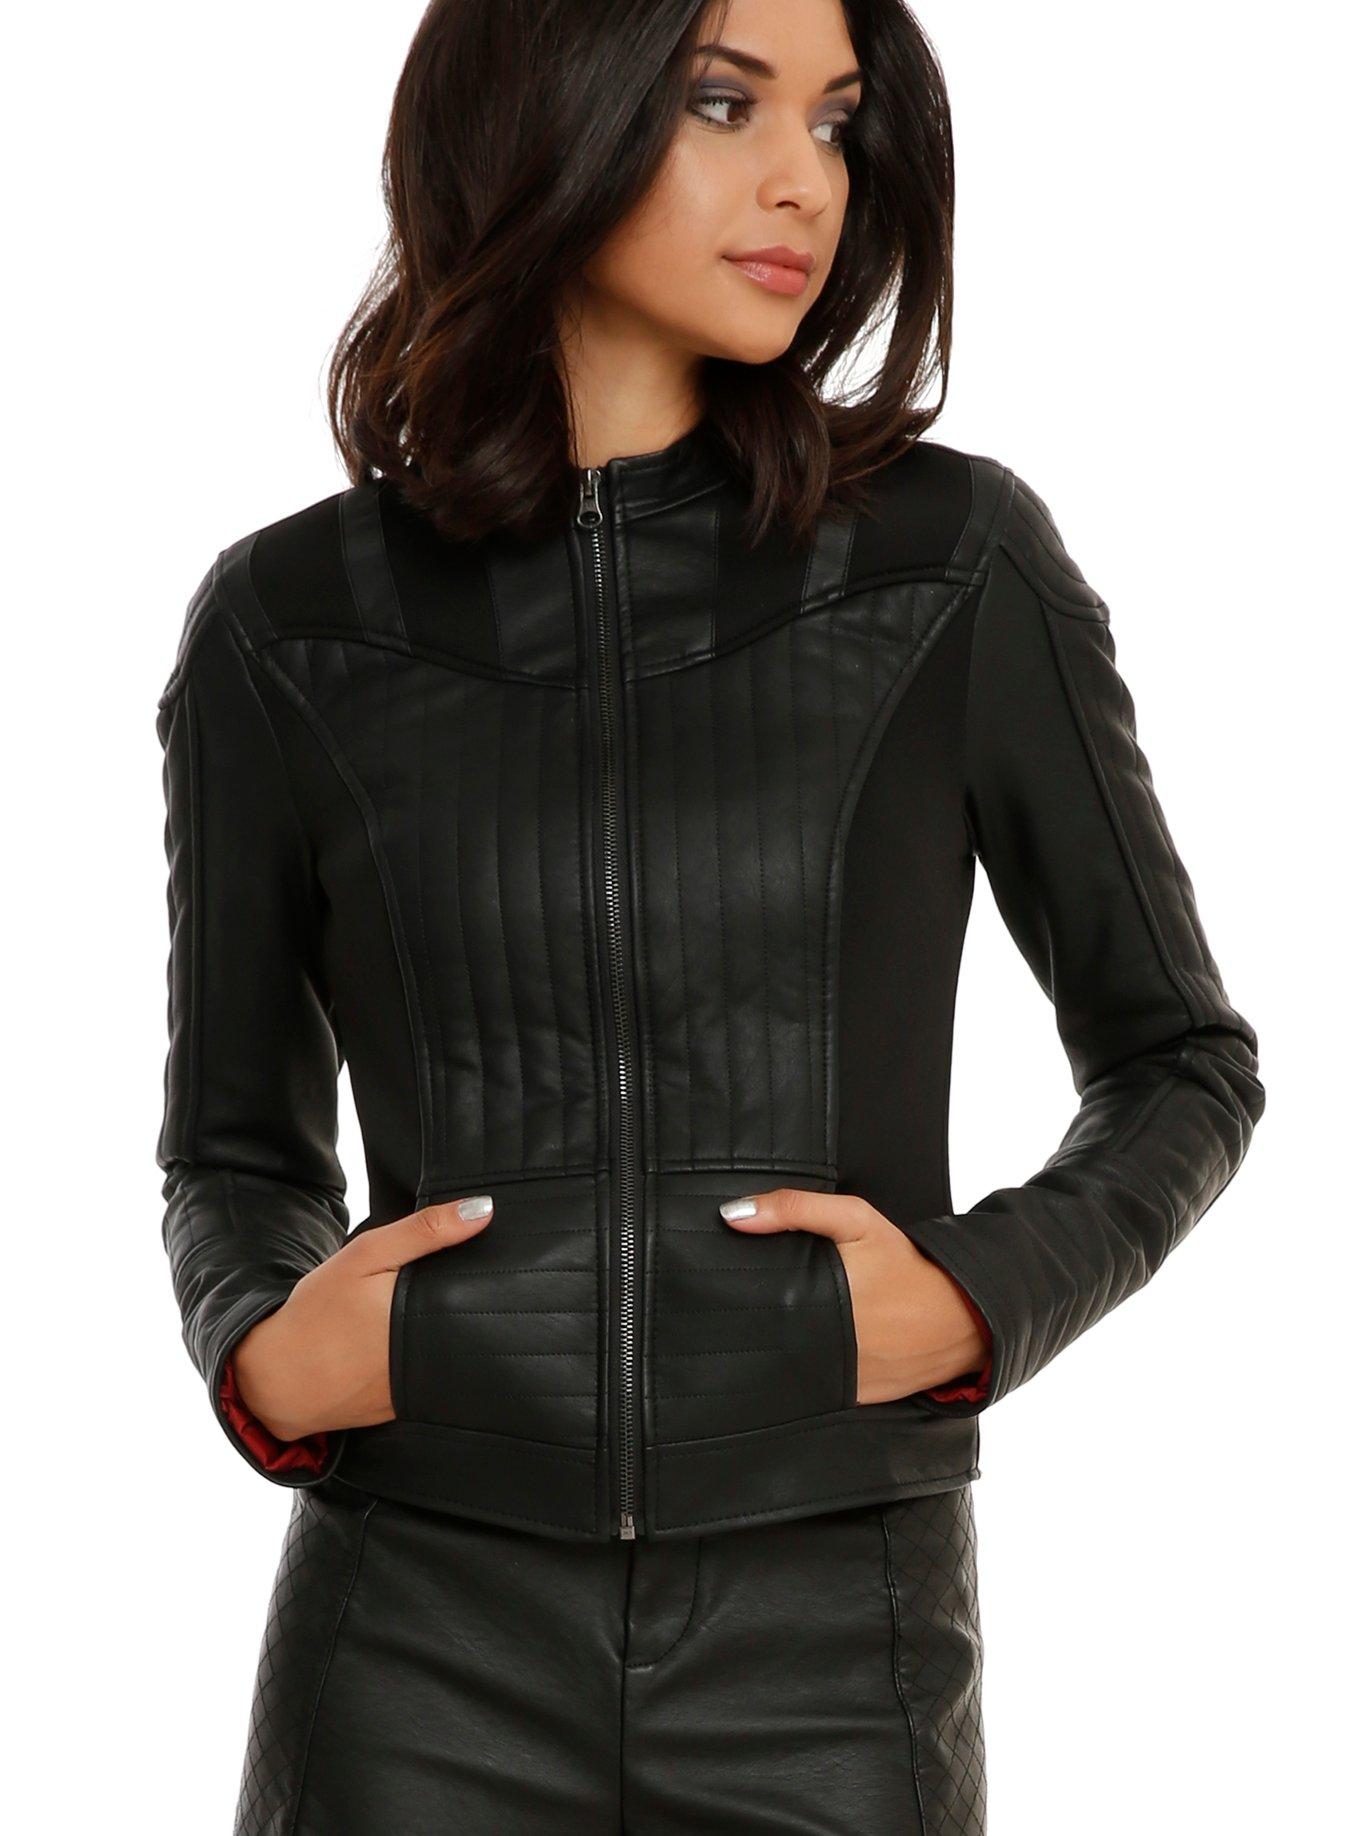 Her Universe Star Wars Darth Vader Girls Faux Leather Jacket, BLACK, hi-res